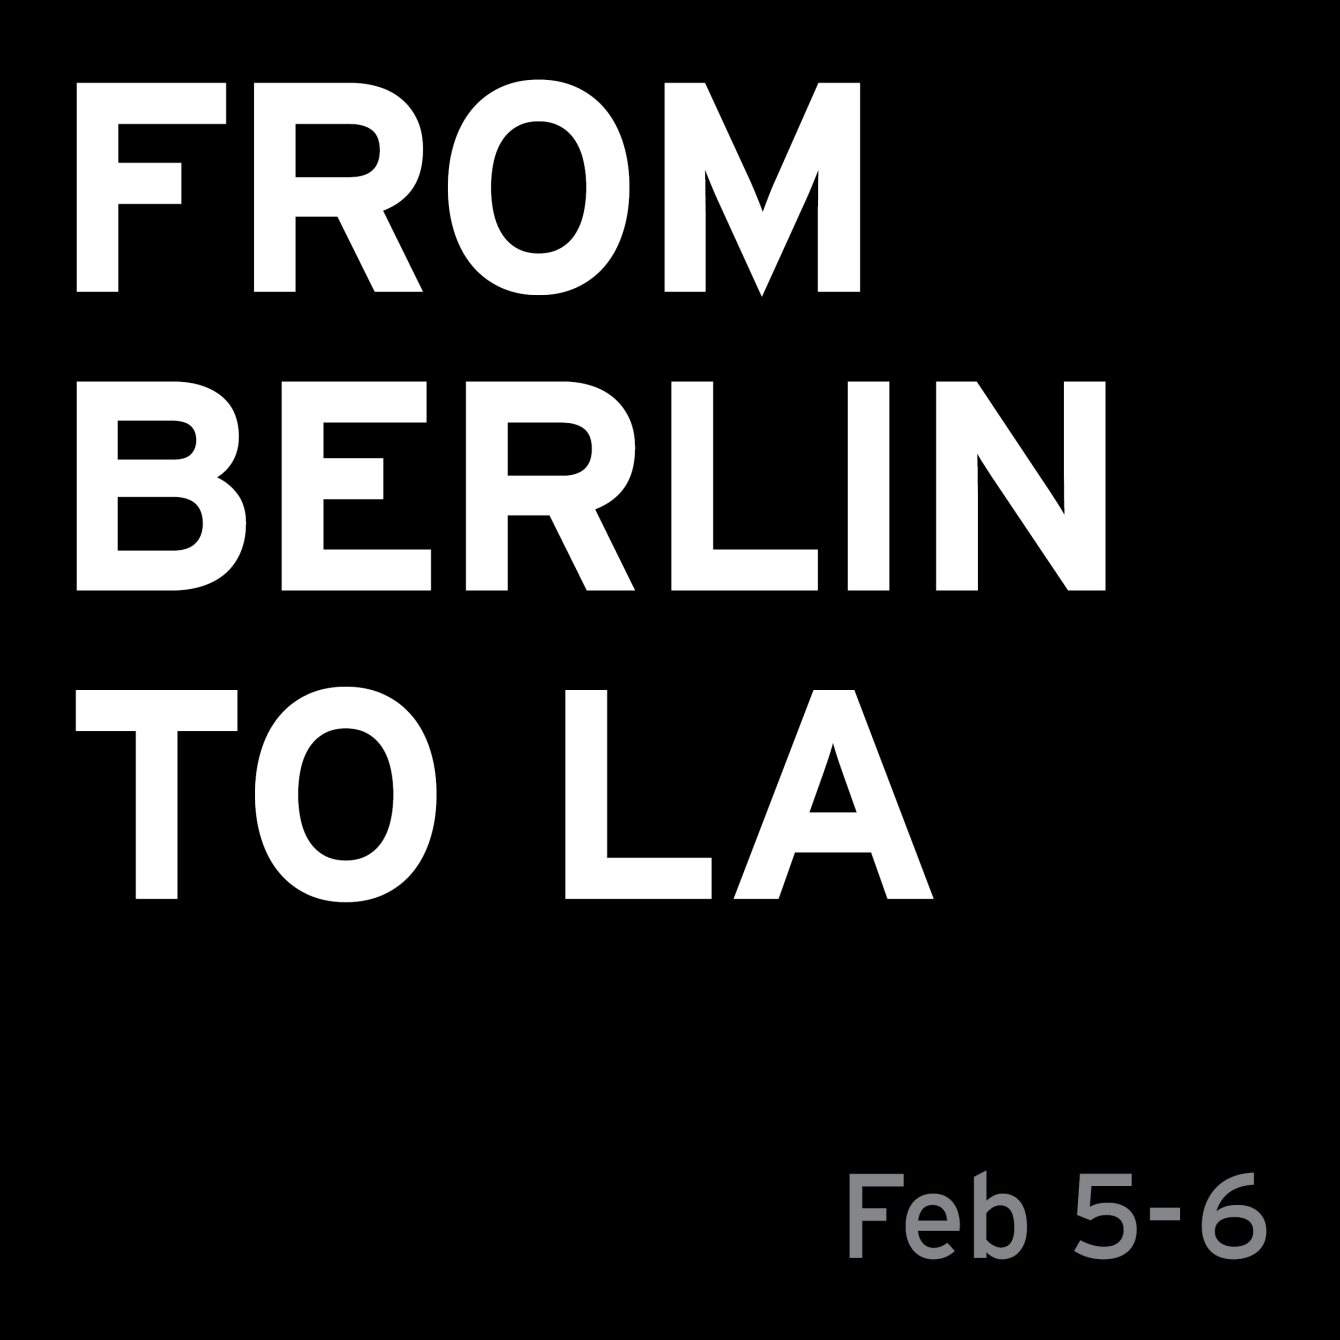 From Berlin to LA - Página frontal